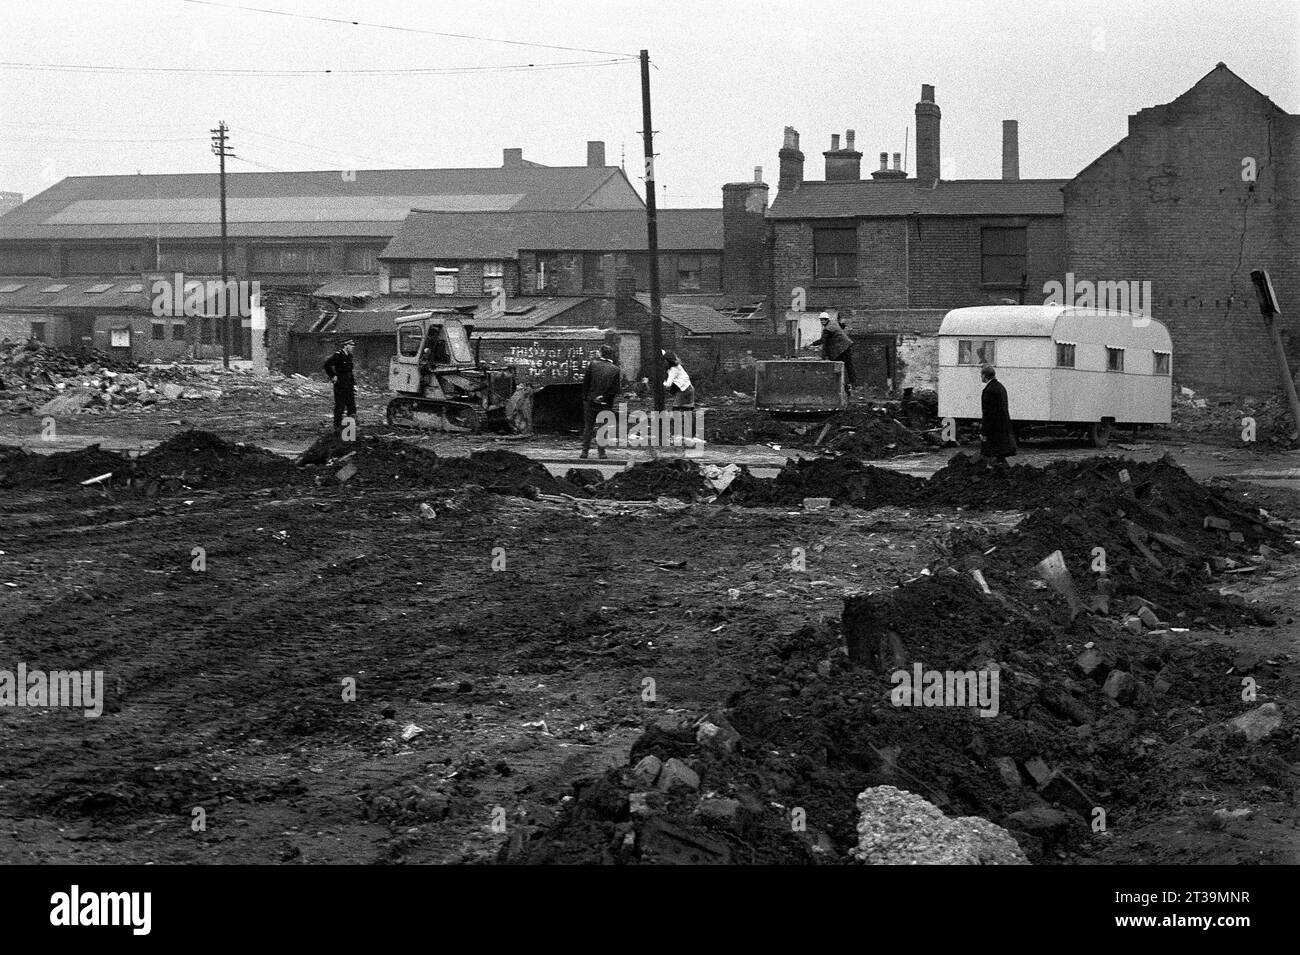 Les contracteurs et la police déplacent les voyageurs et leur caravane hors des terrains de démolition pendant le nettoyage des bidonvilles de St ann's, Nottingham. 1969-1972 Banque D'Images